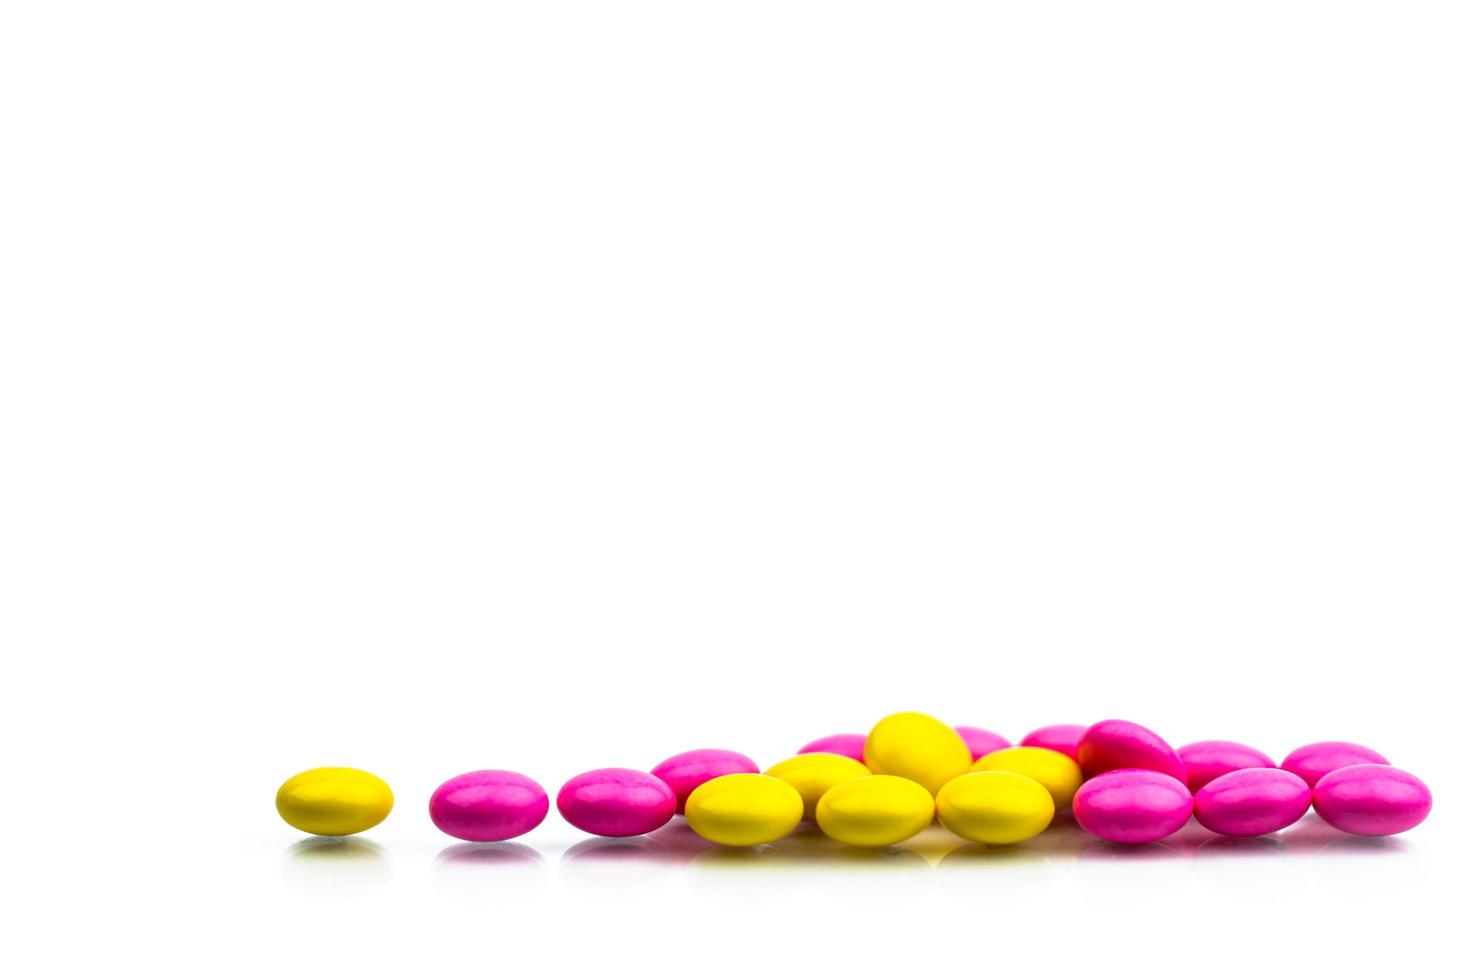 tas de comprimés enrobés de sucre rond rose et jaune comprimés isolés sur fond blanc avec espace de copie. pilules colorées pour le traitement de la prophylaxie anti-anxiété, antidépresseur et migraine. photo